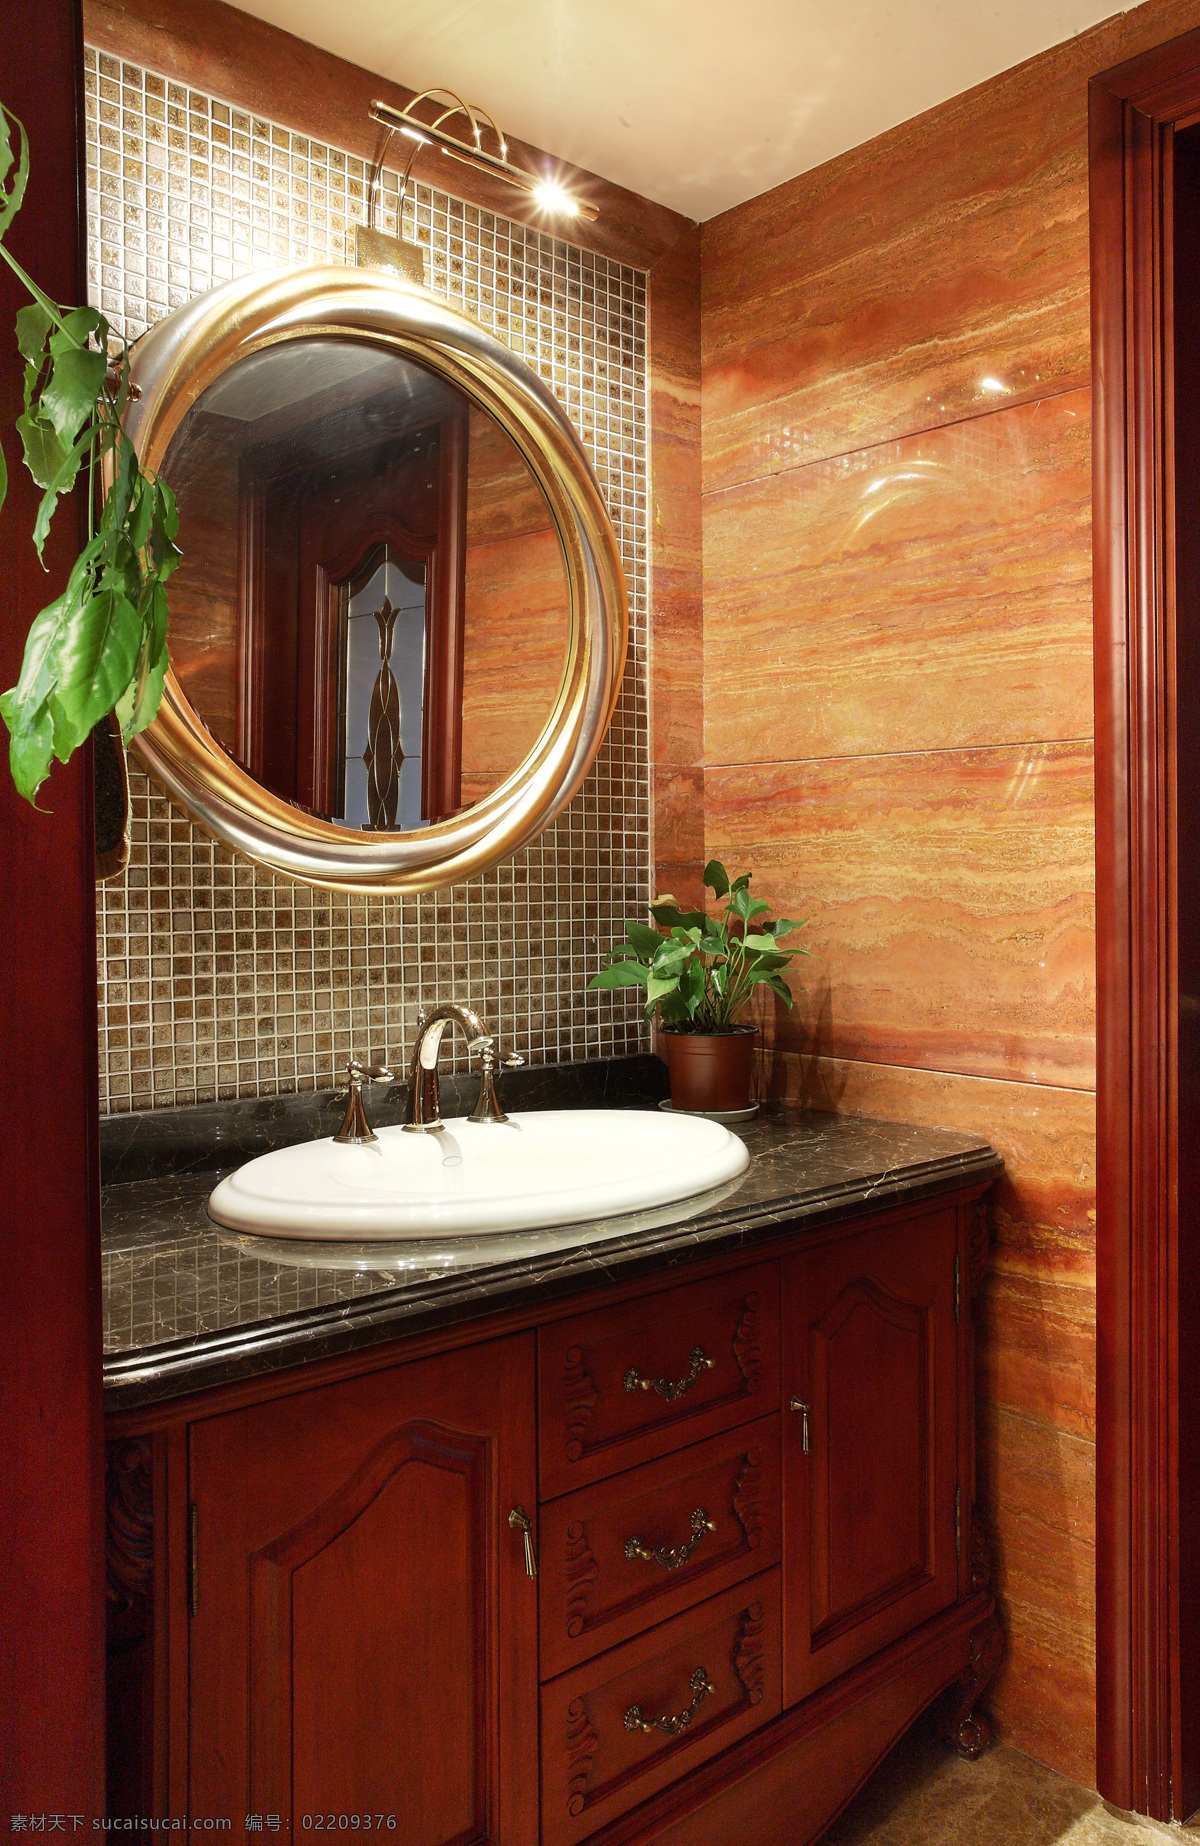 中式 浴室 木材 纹理 墙面 室内装修 效果图 圆形镜面 马赛克墙面 洗手池 木柜子 小盆栽